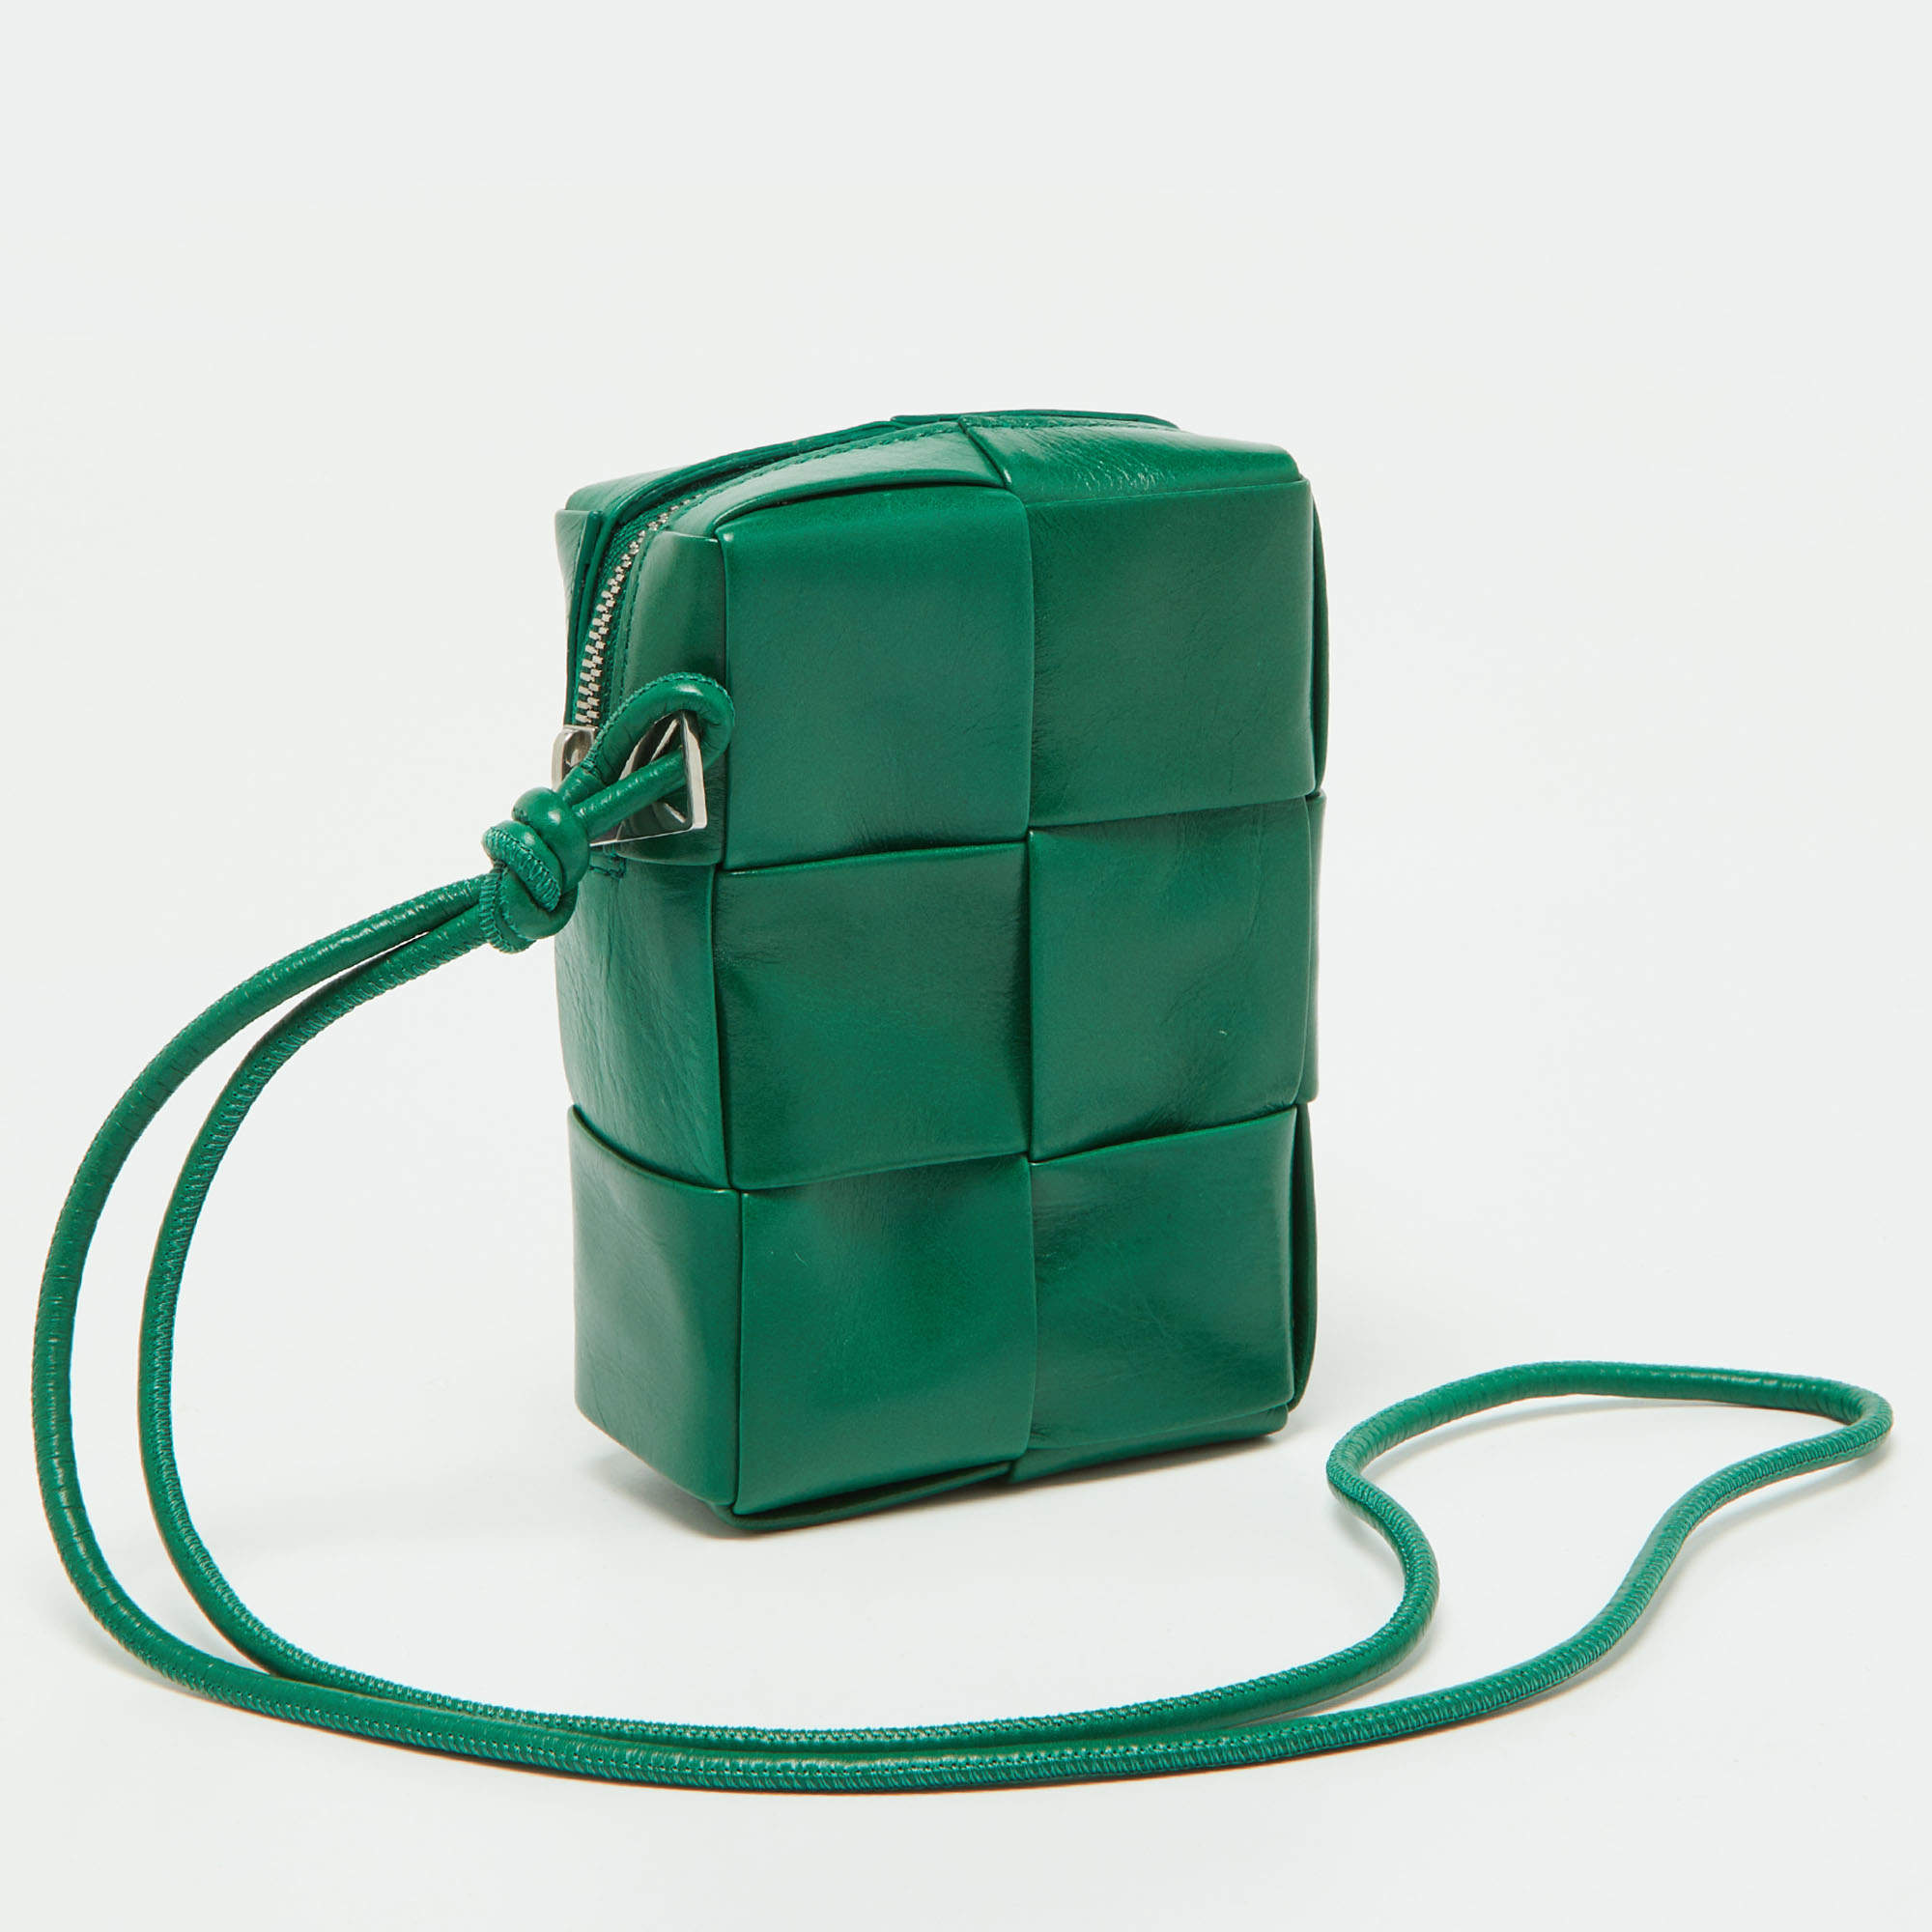 Bottega Veneta Pouch in Green Intrecciato Leather